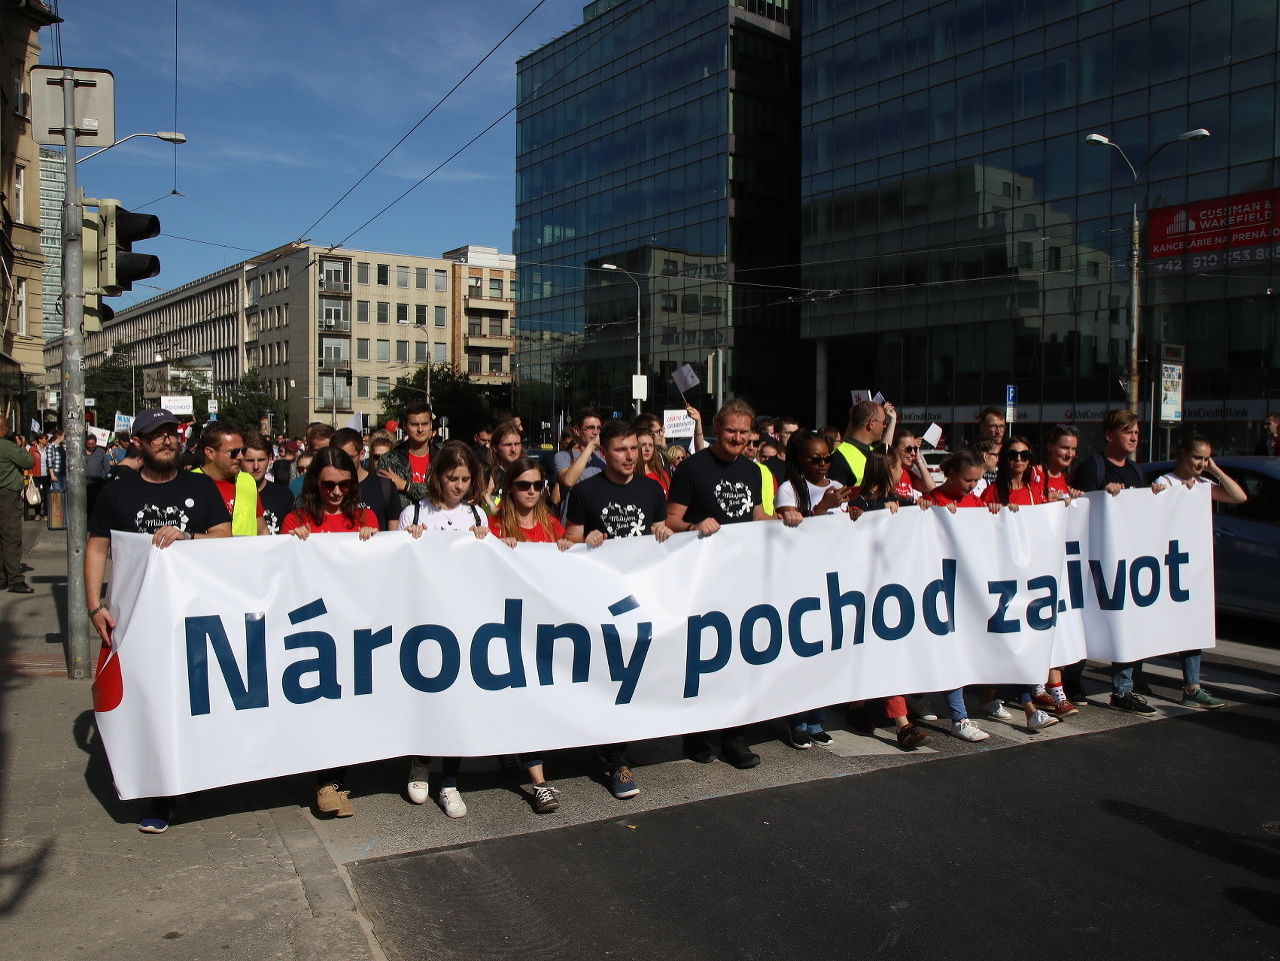 Národný pochod za život v Bratislave